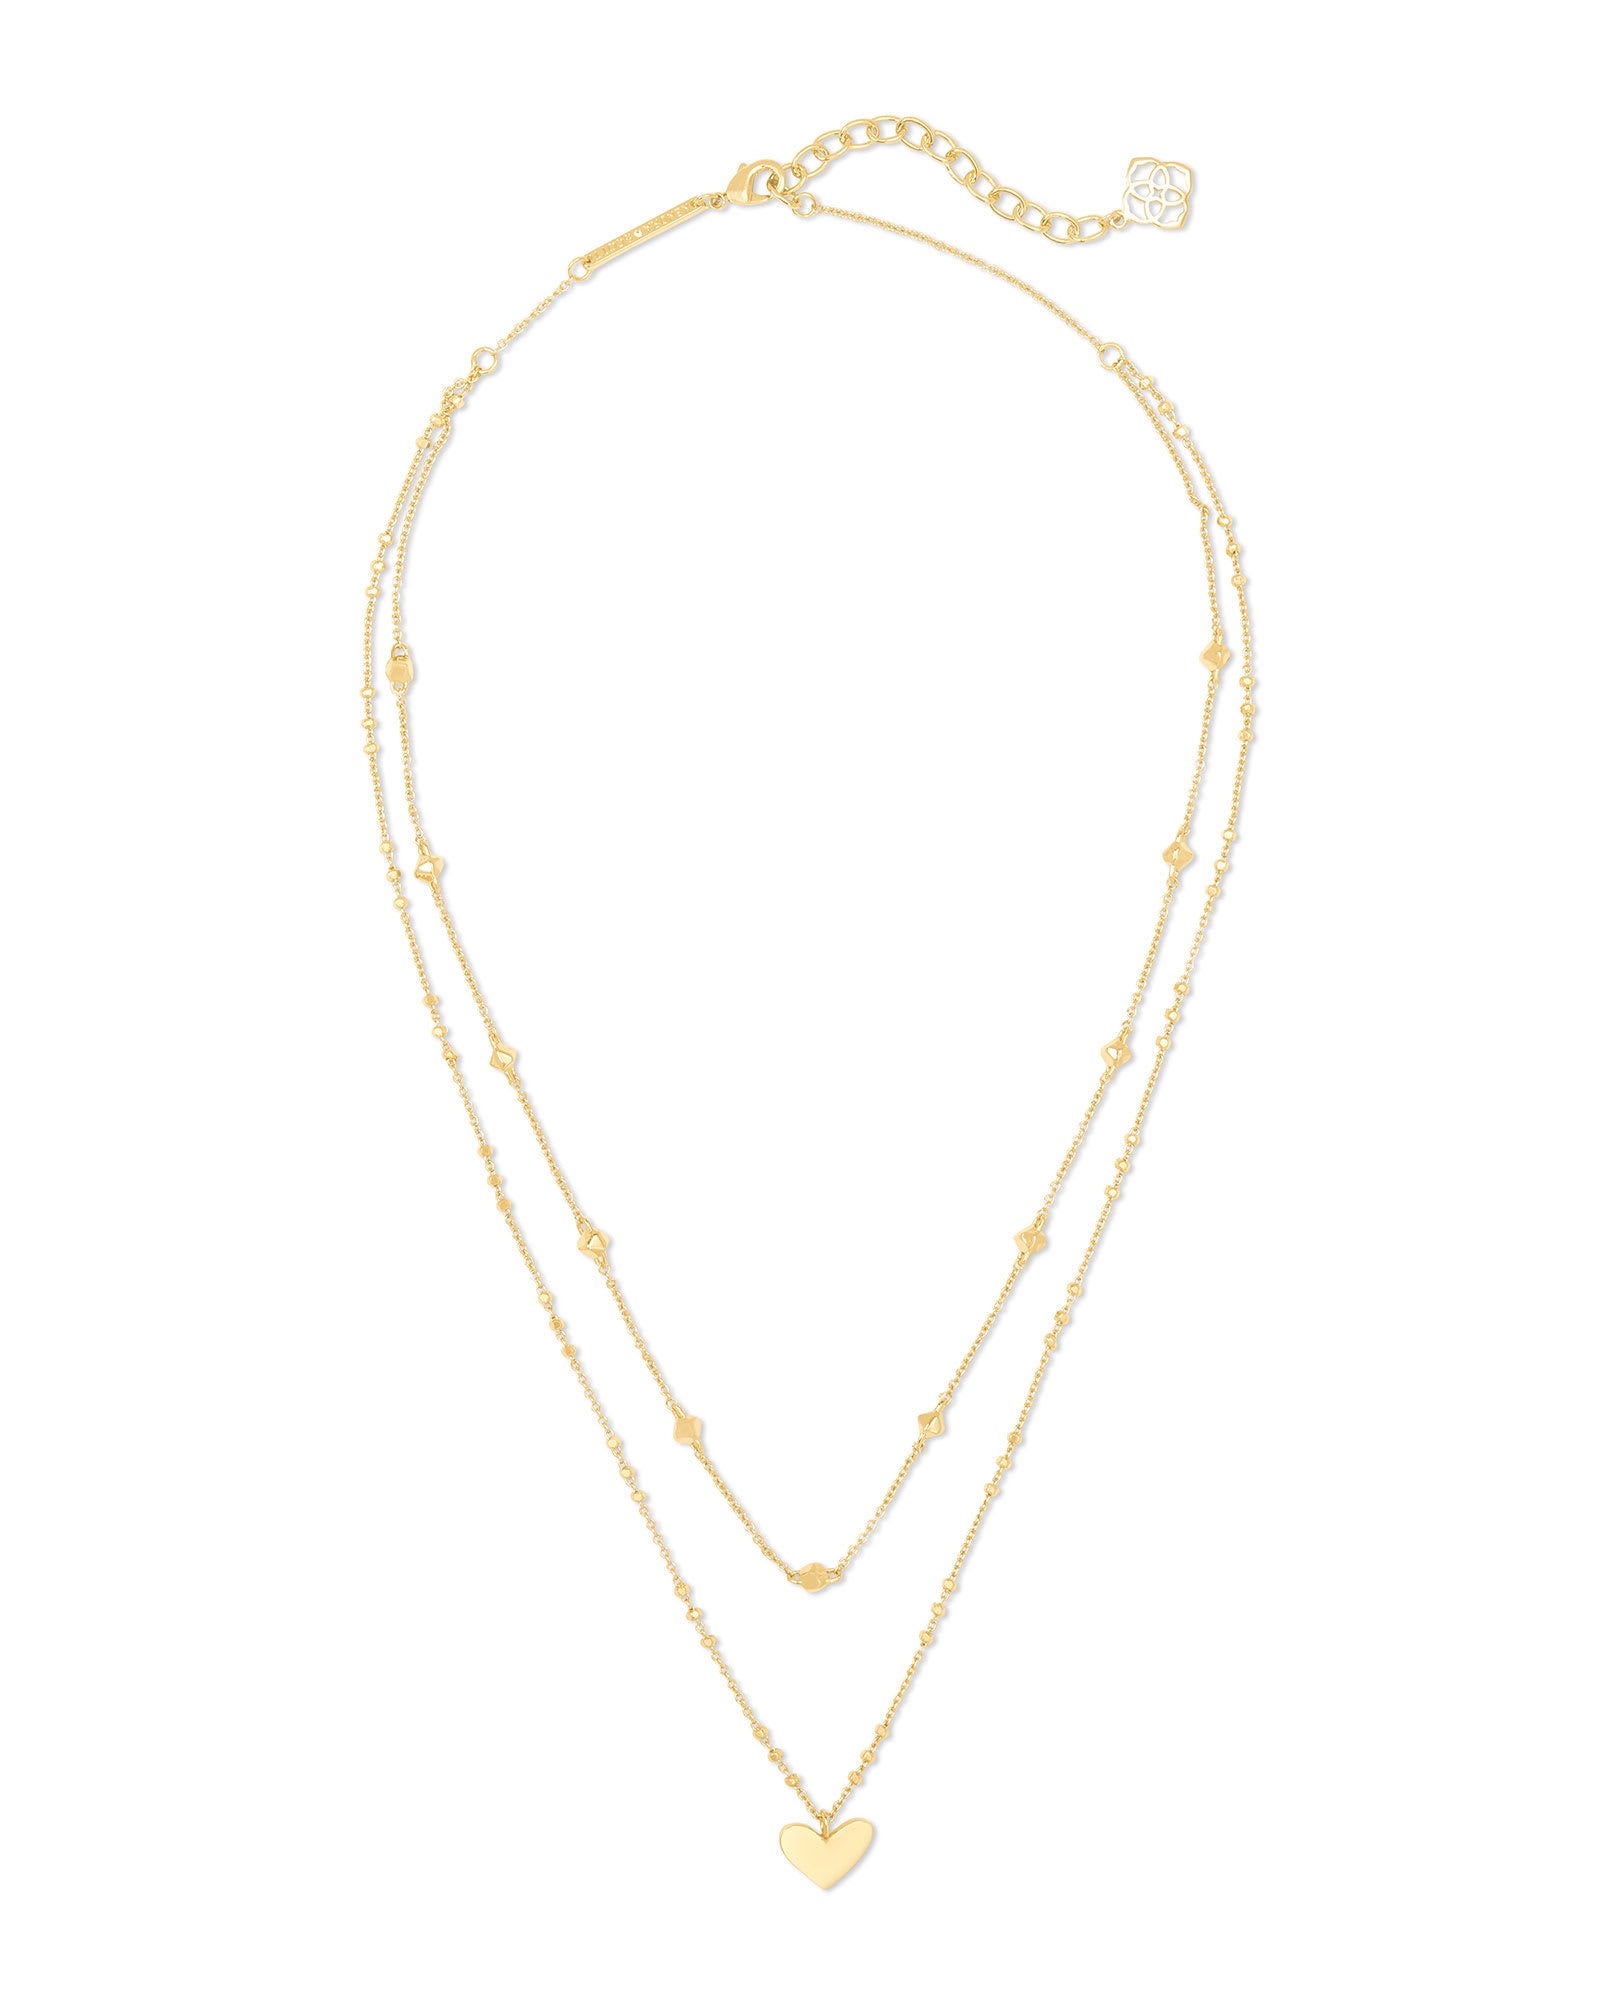 Ari Heart Multi Strand Necklace